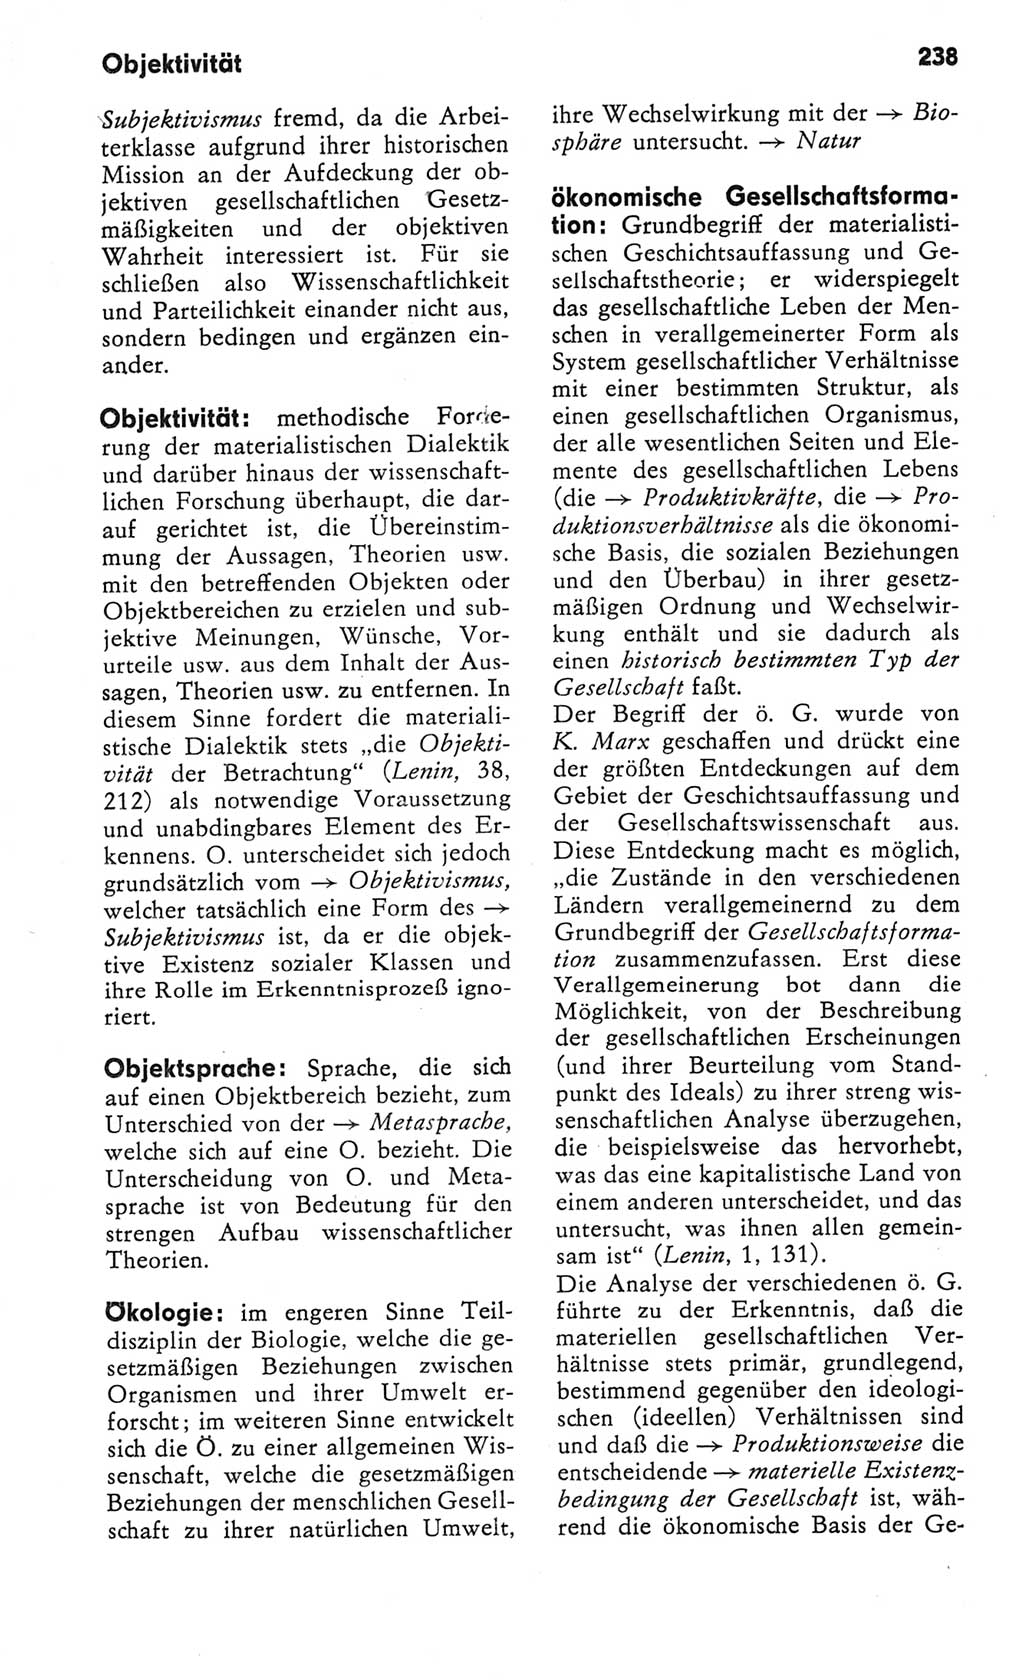 Kleines Wörterbuch der marxistisch-leninistischen Philosophie [Deutsche Demokratische Republik (DDR)] 1982, Seite 238 (Kl. Wb. ML Phil. DDR 1982, S. 238)